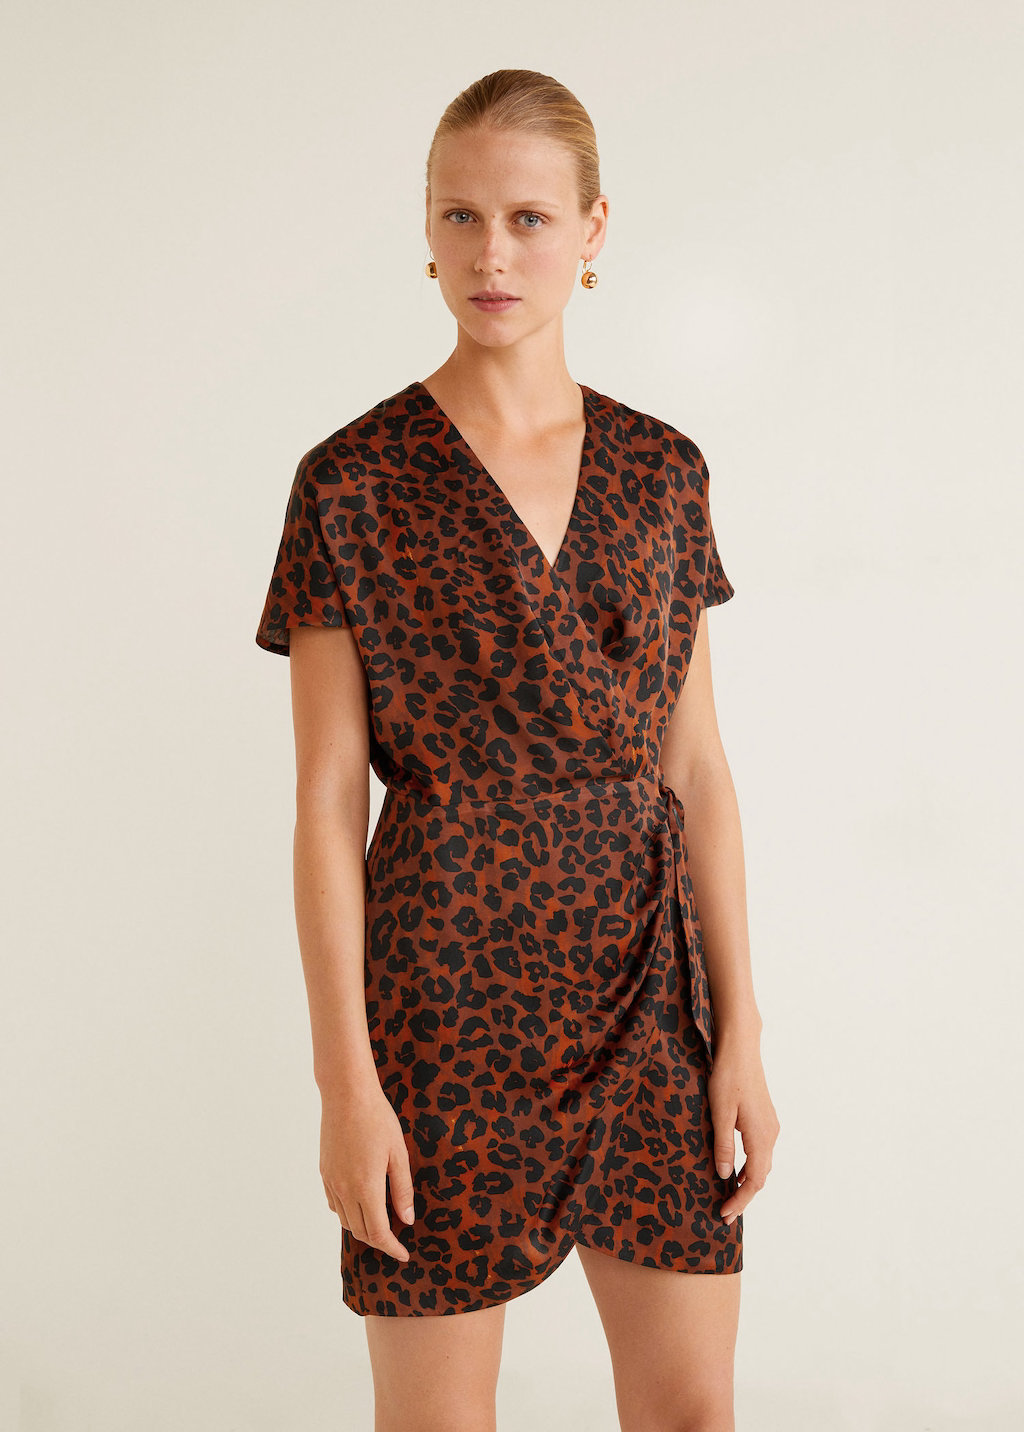 Vestido estampado leopardo por25,99 €